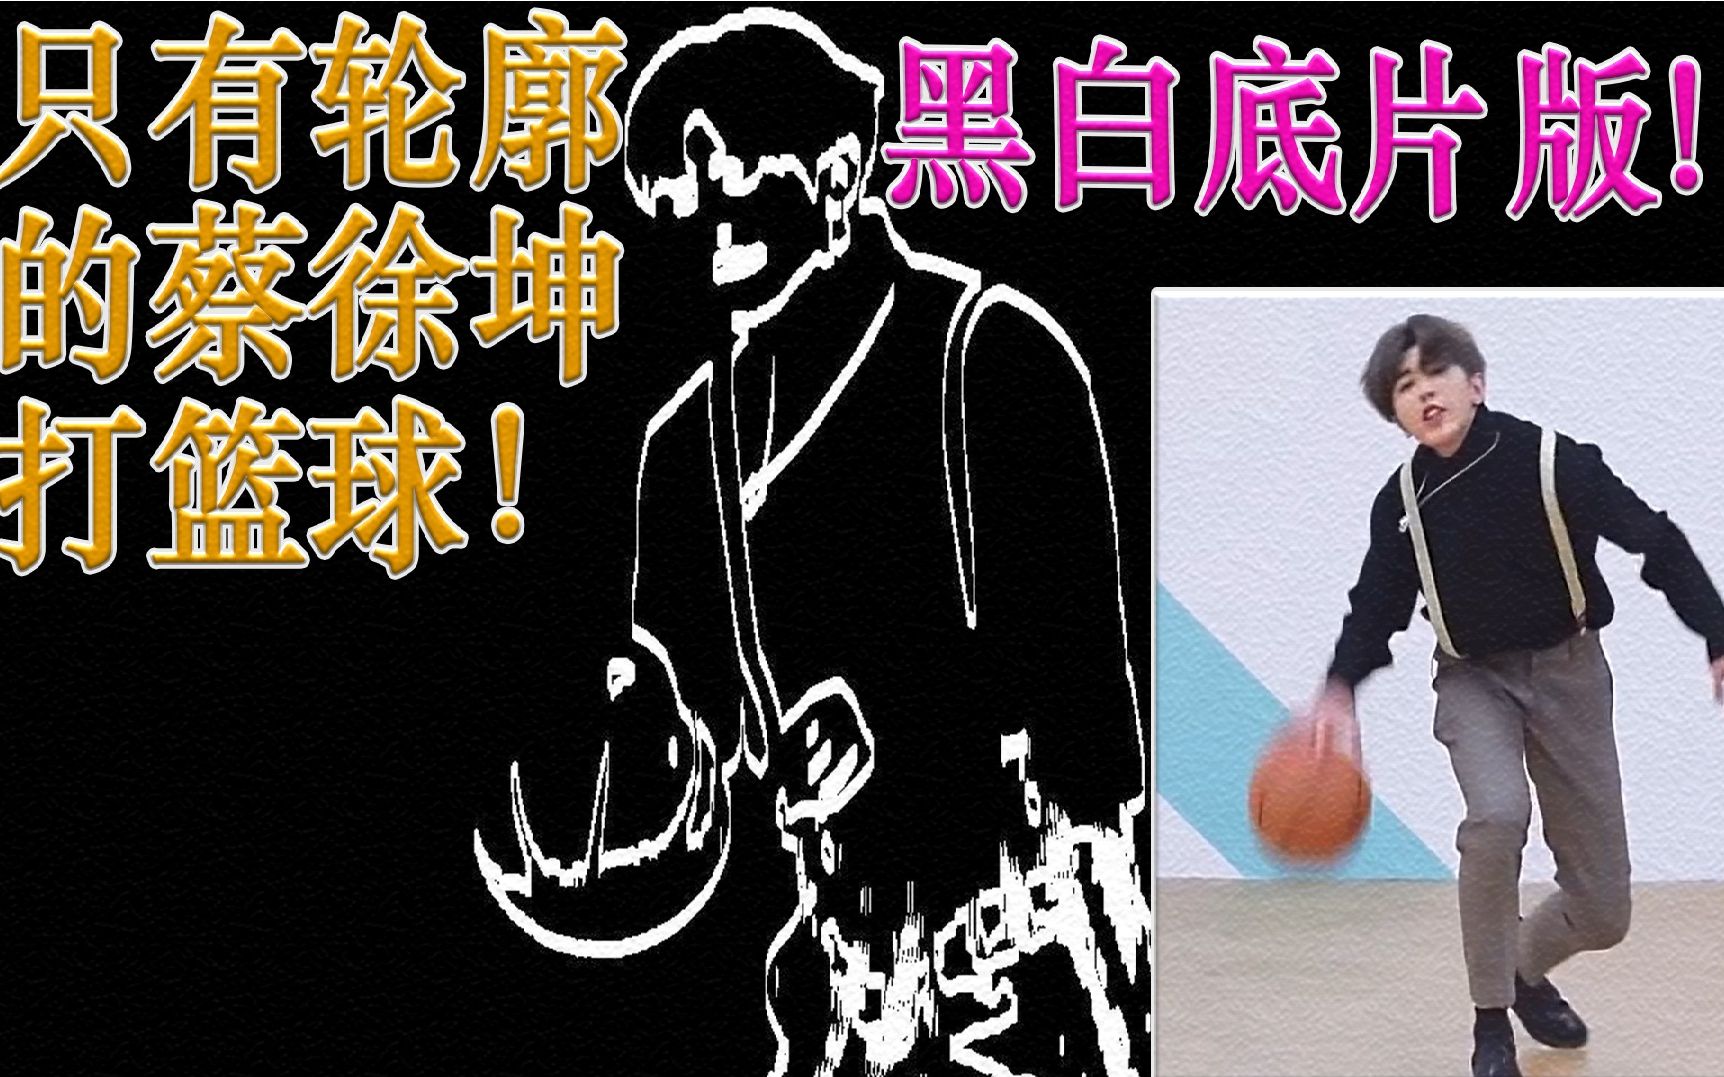 蔡徐坤打篮球息屏图片